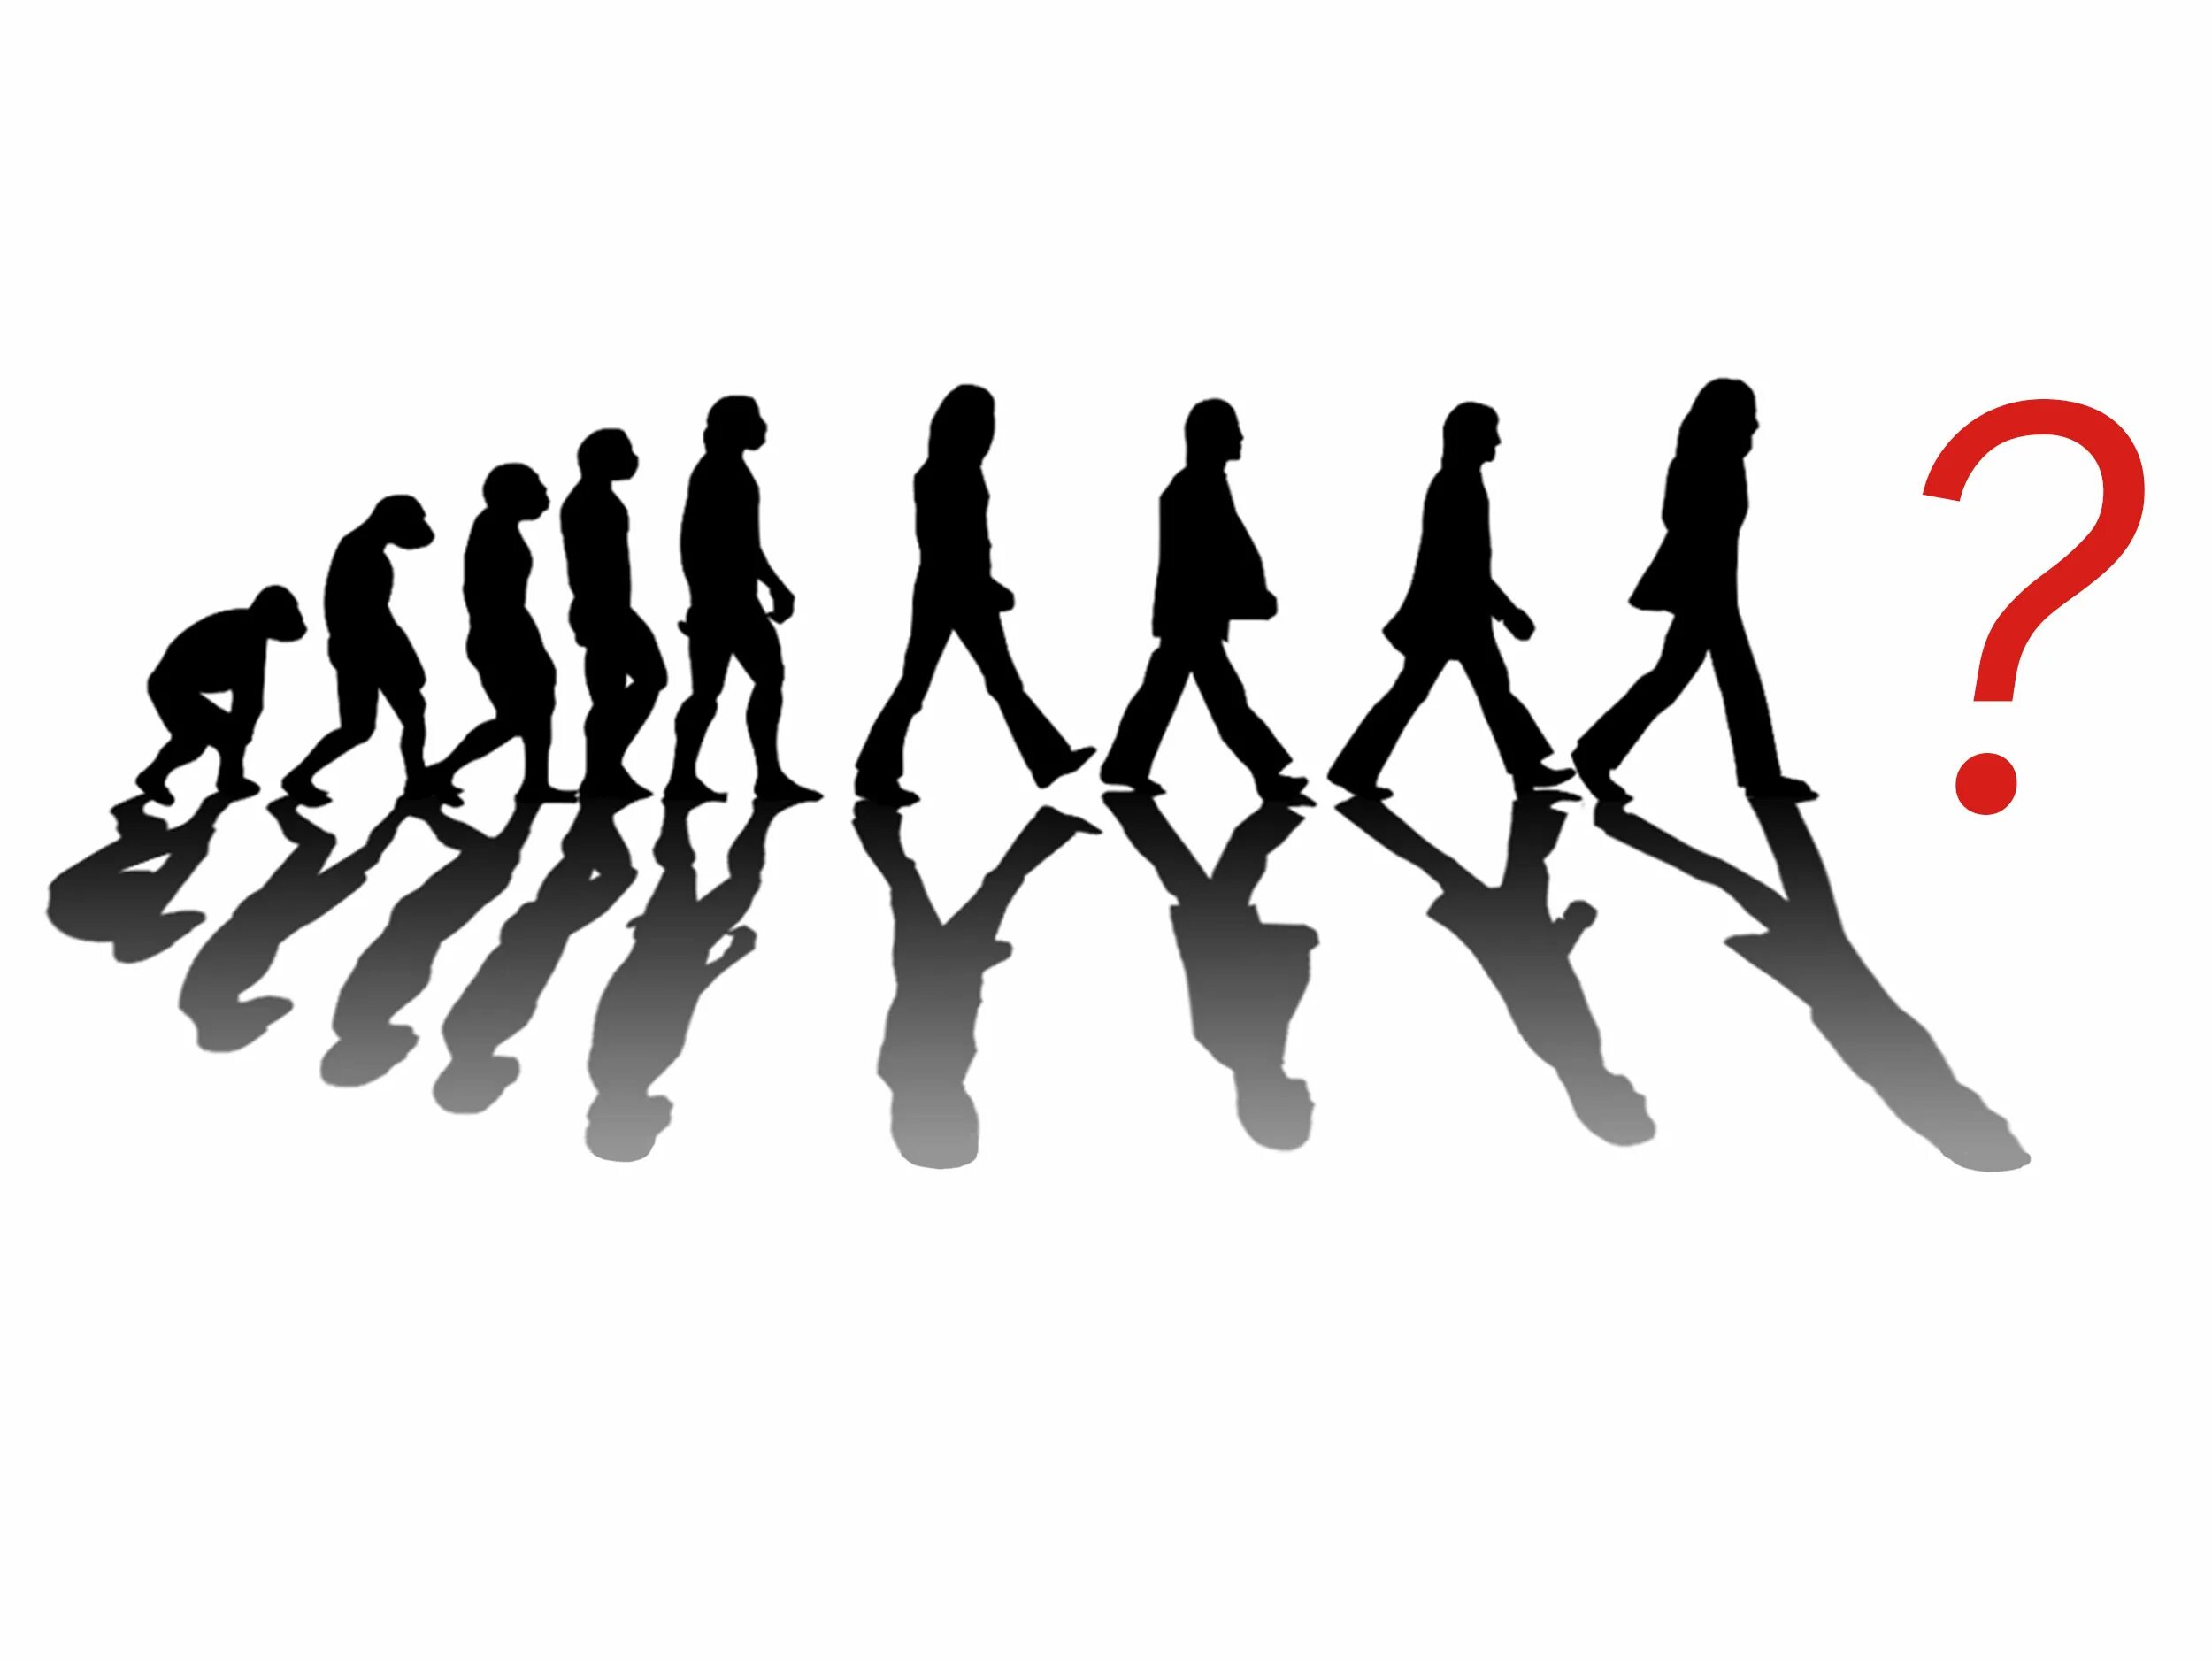 Окружение в котором развивается человек 6. Эволюция Битлз. Эволюция общества. Человечество развивается. Эволюция человеческого сообщества.